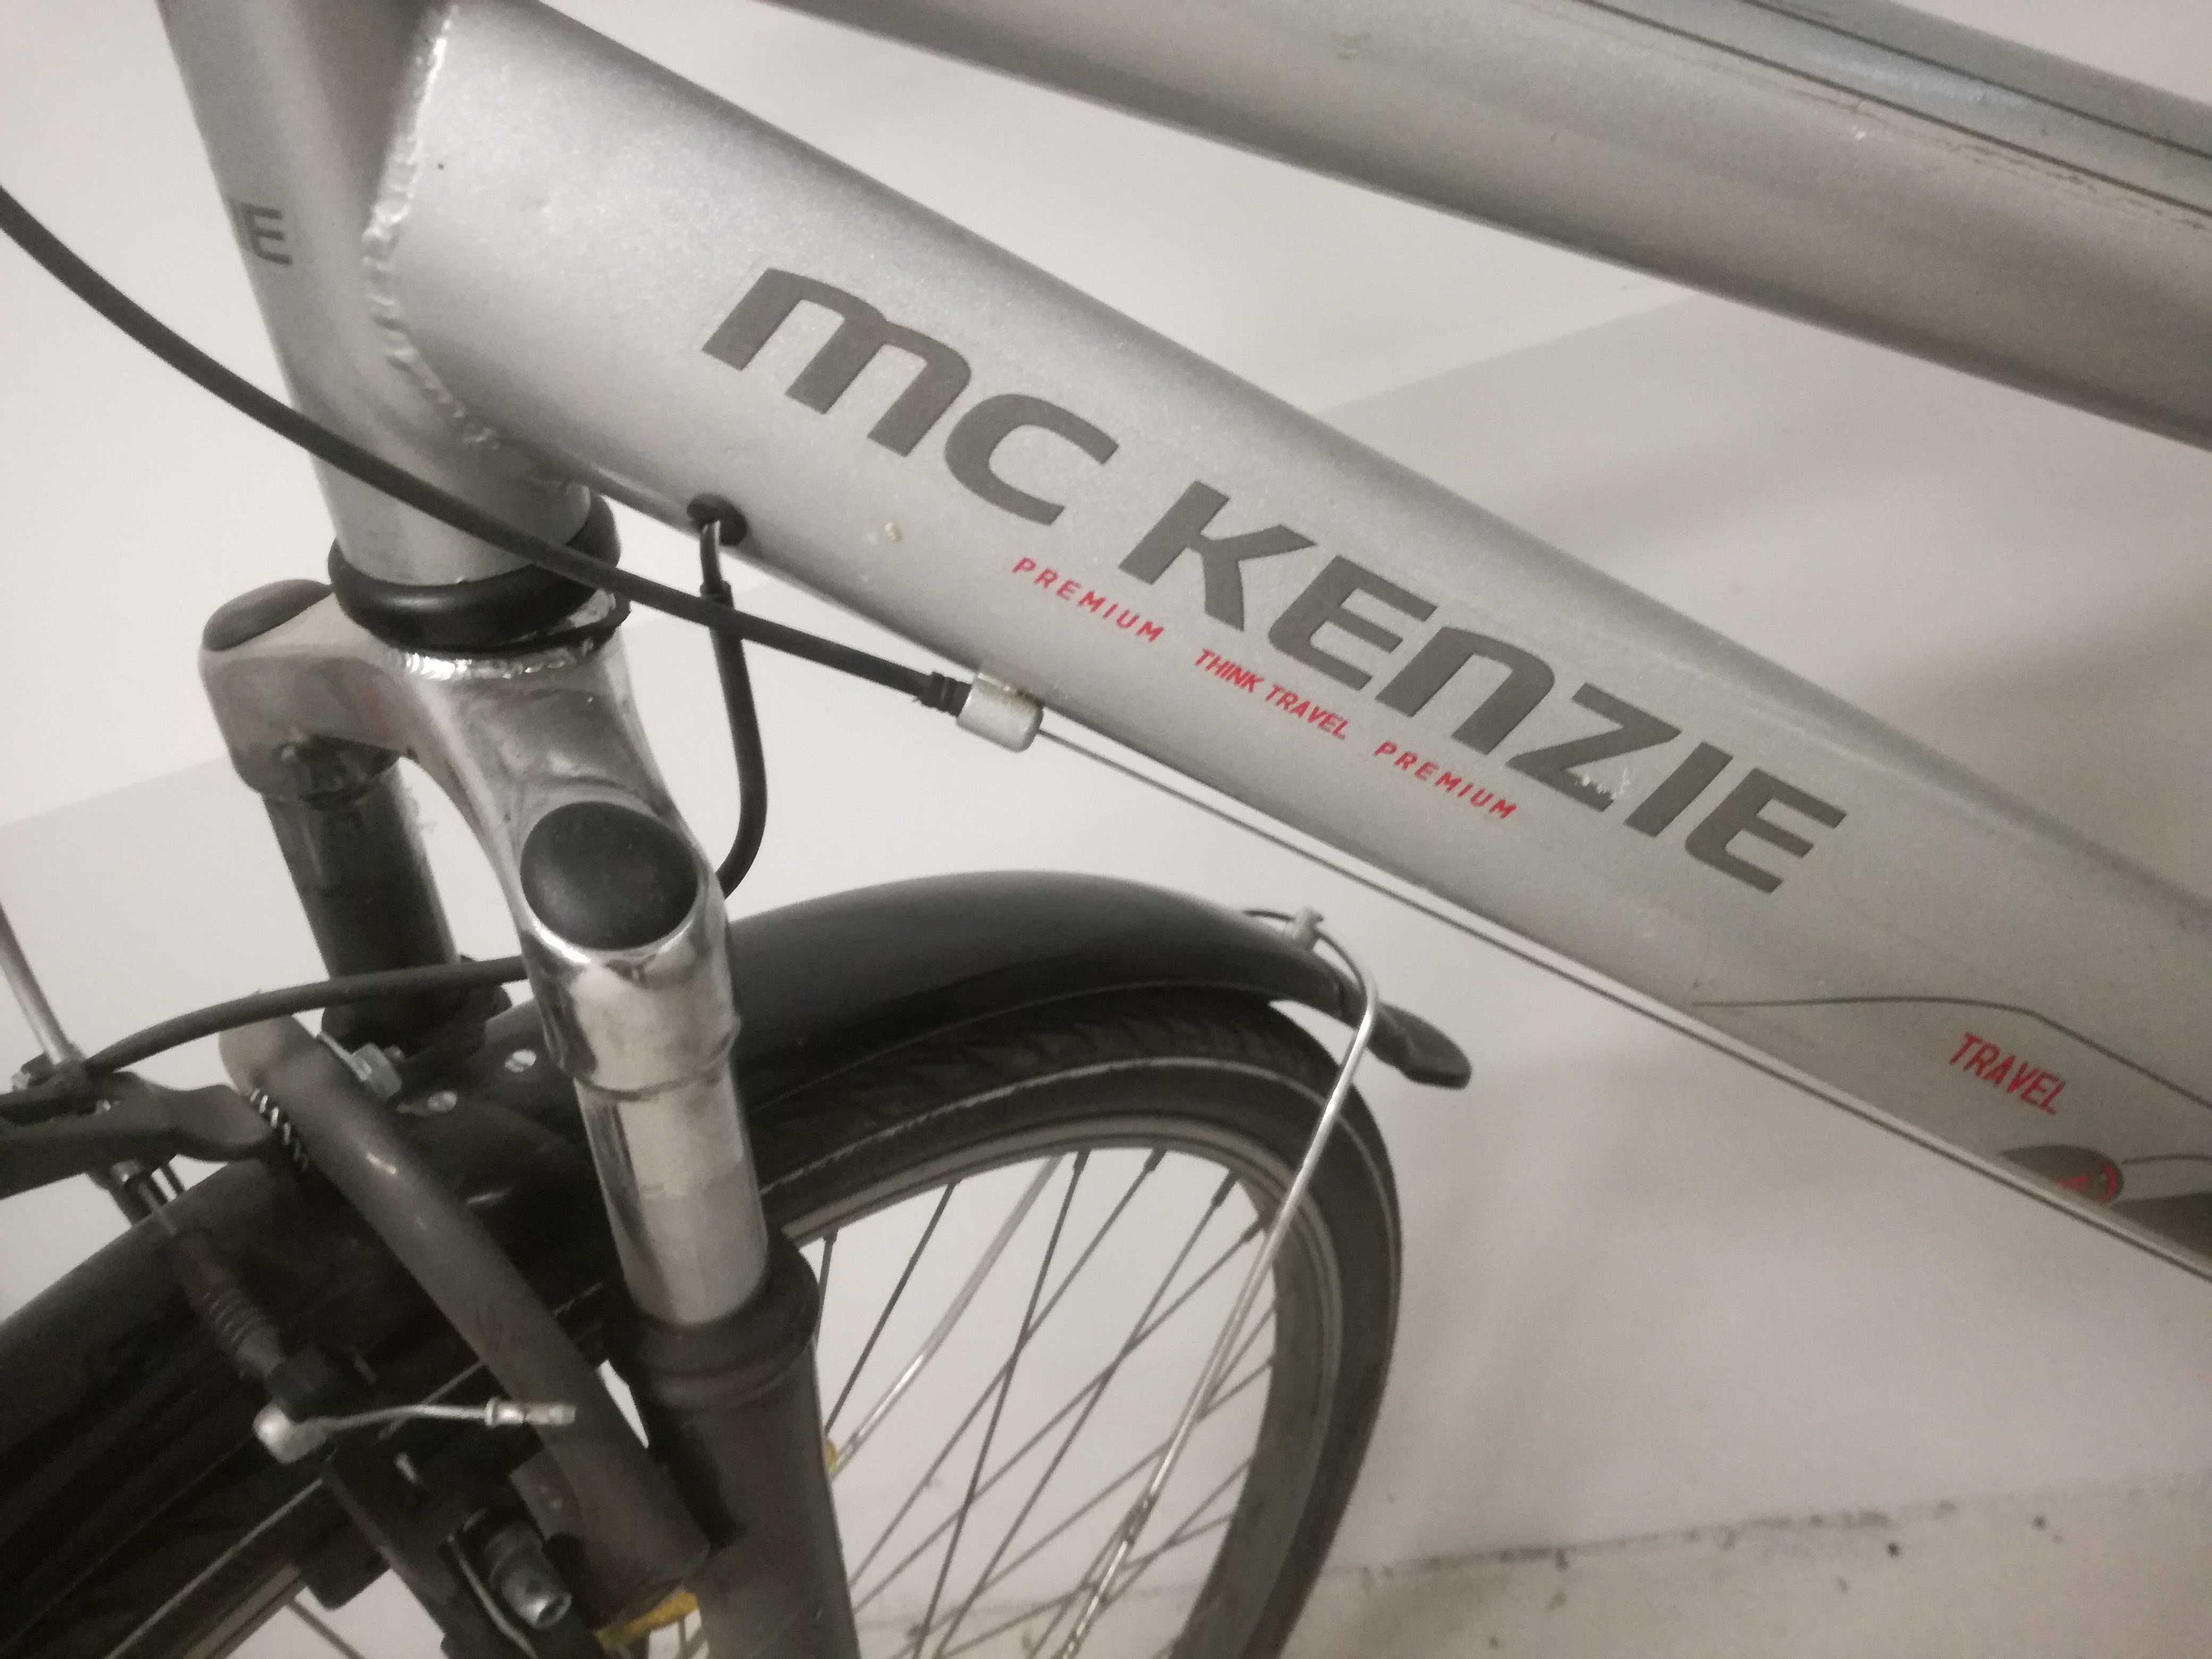 Rower damski MC KENZIE Travel 200 kola 26" alu 2 x Amortyzatory